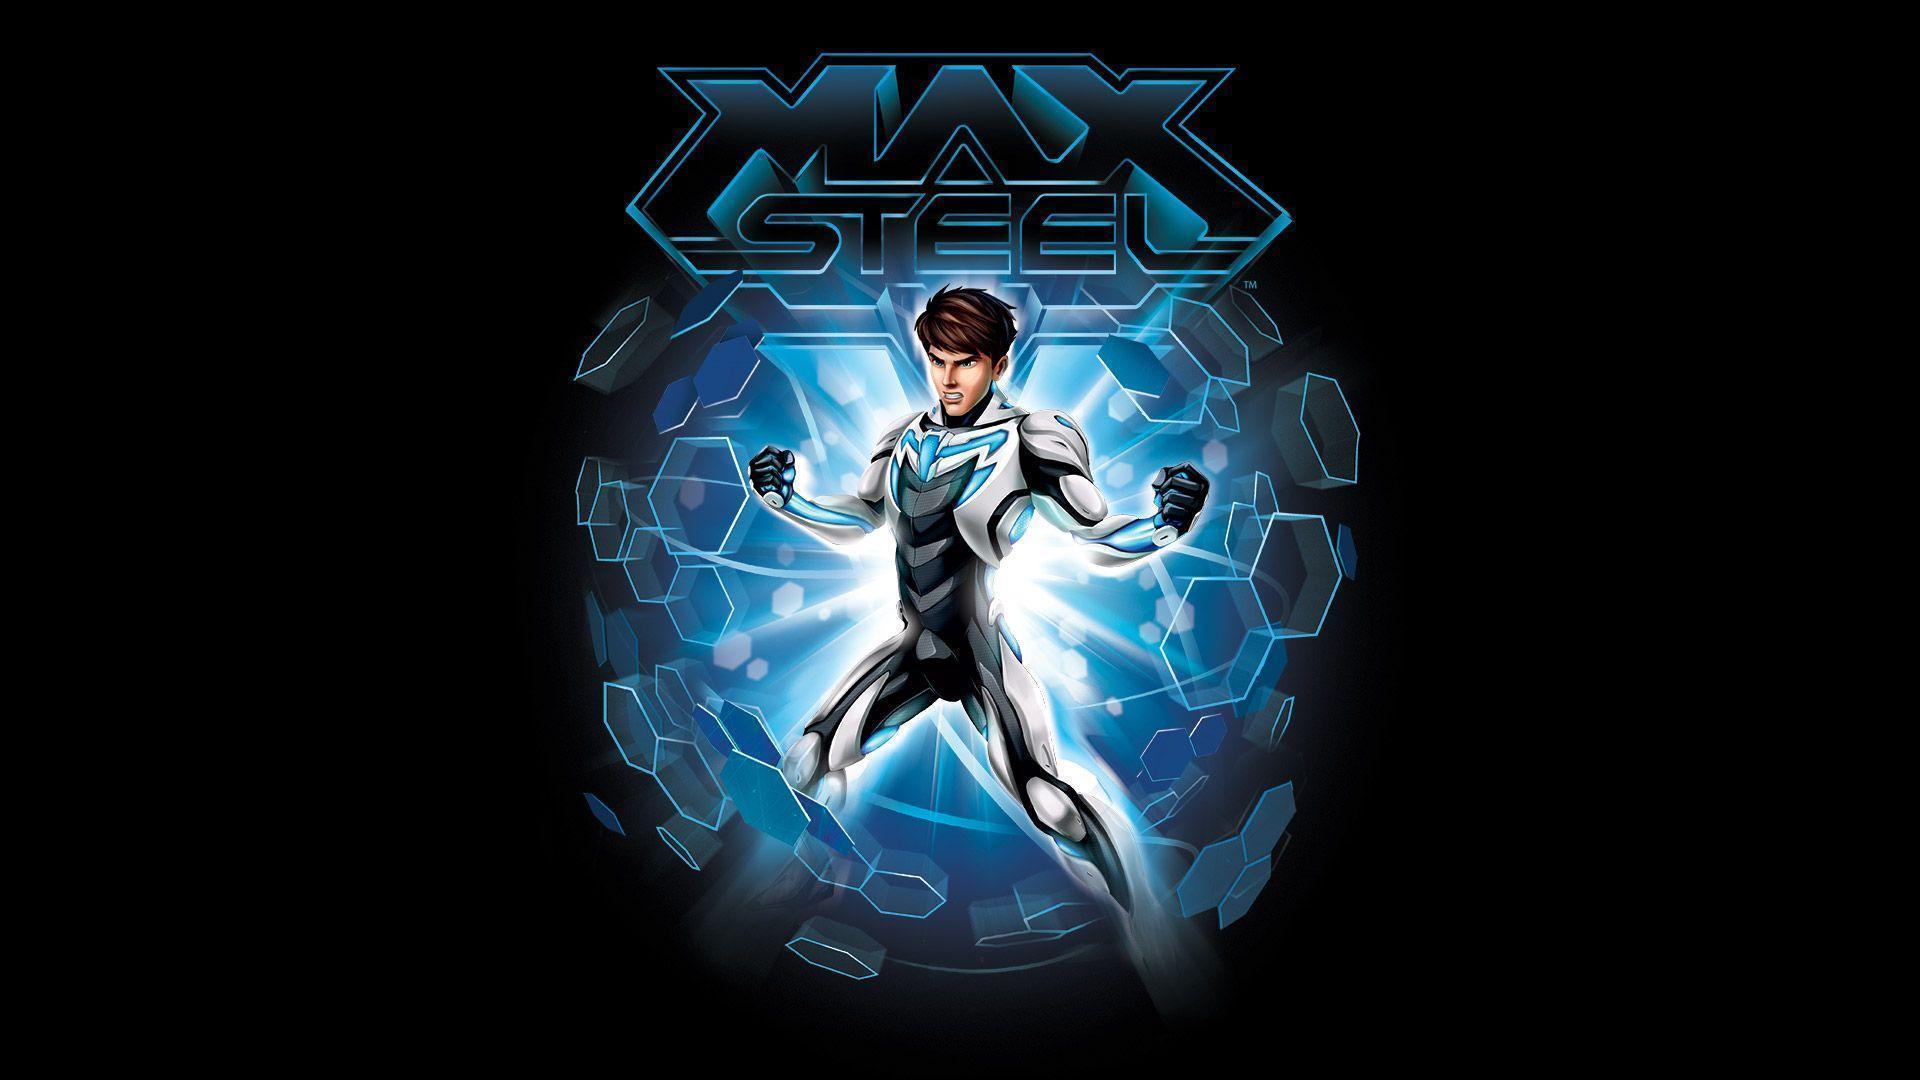 Max Steel (2015) Movie Wallpaper HD Free Download. New HD